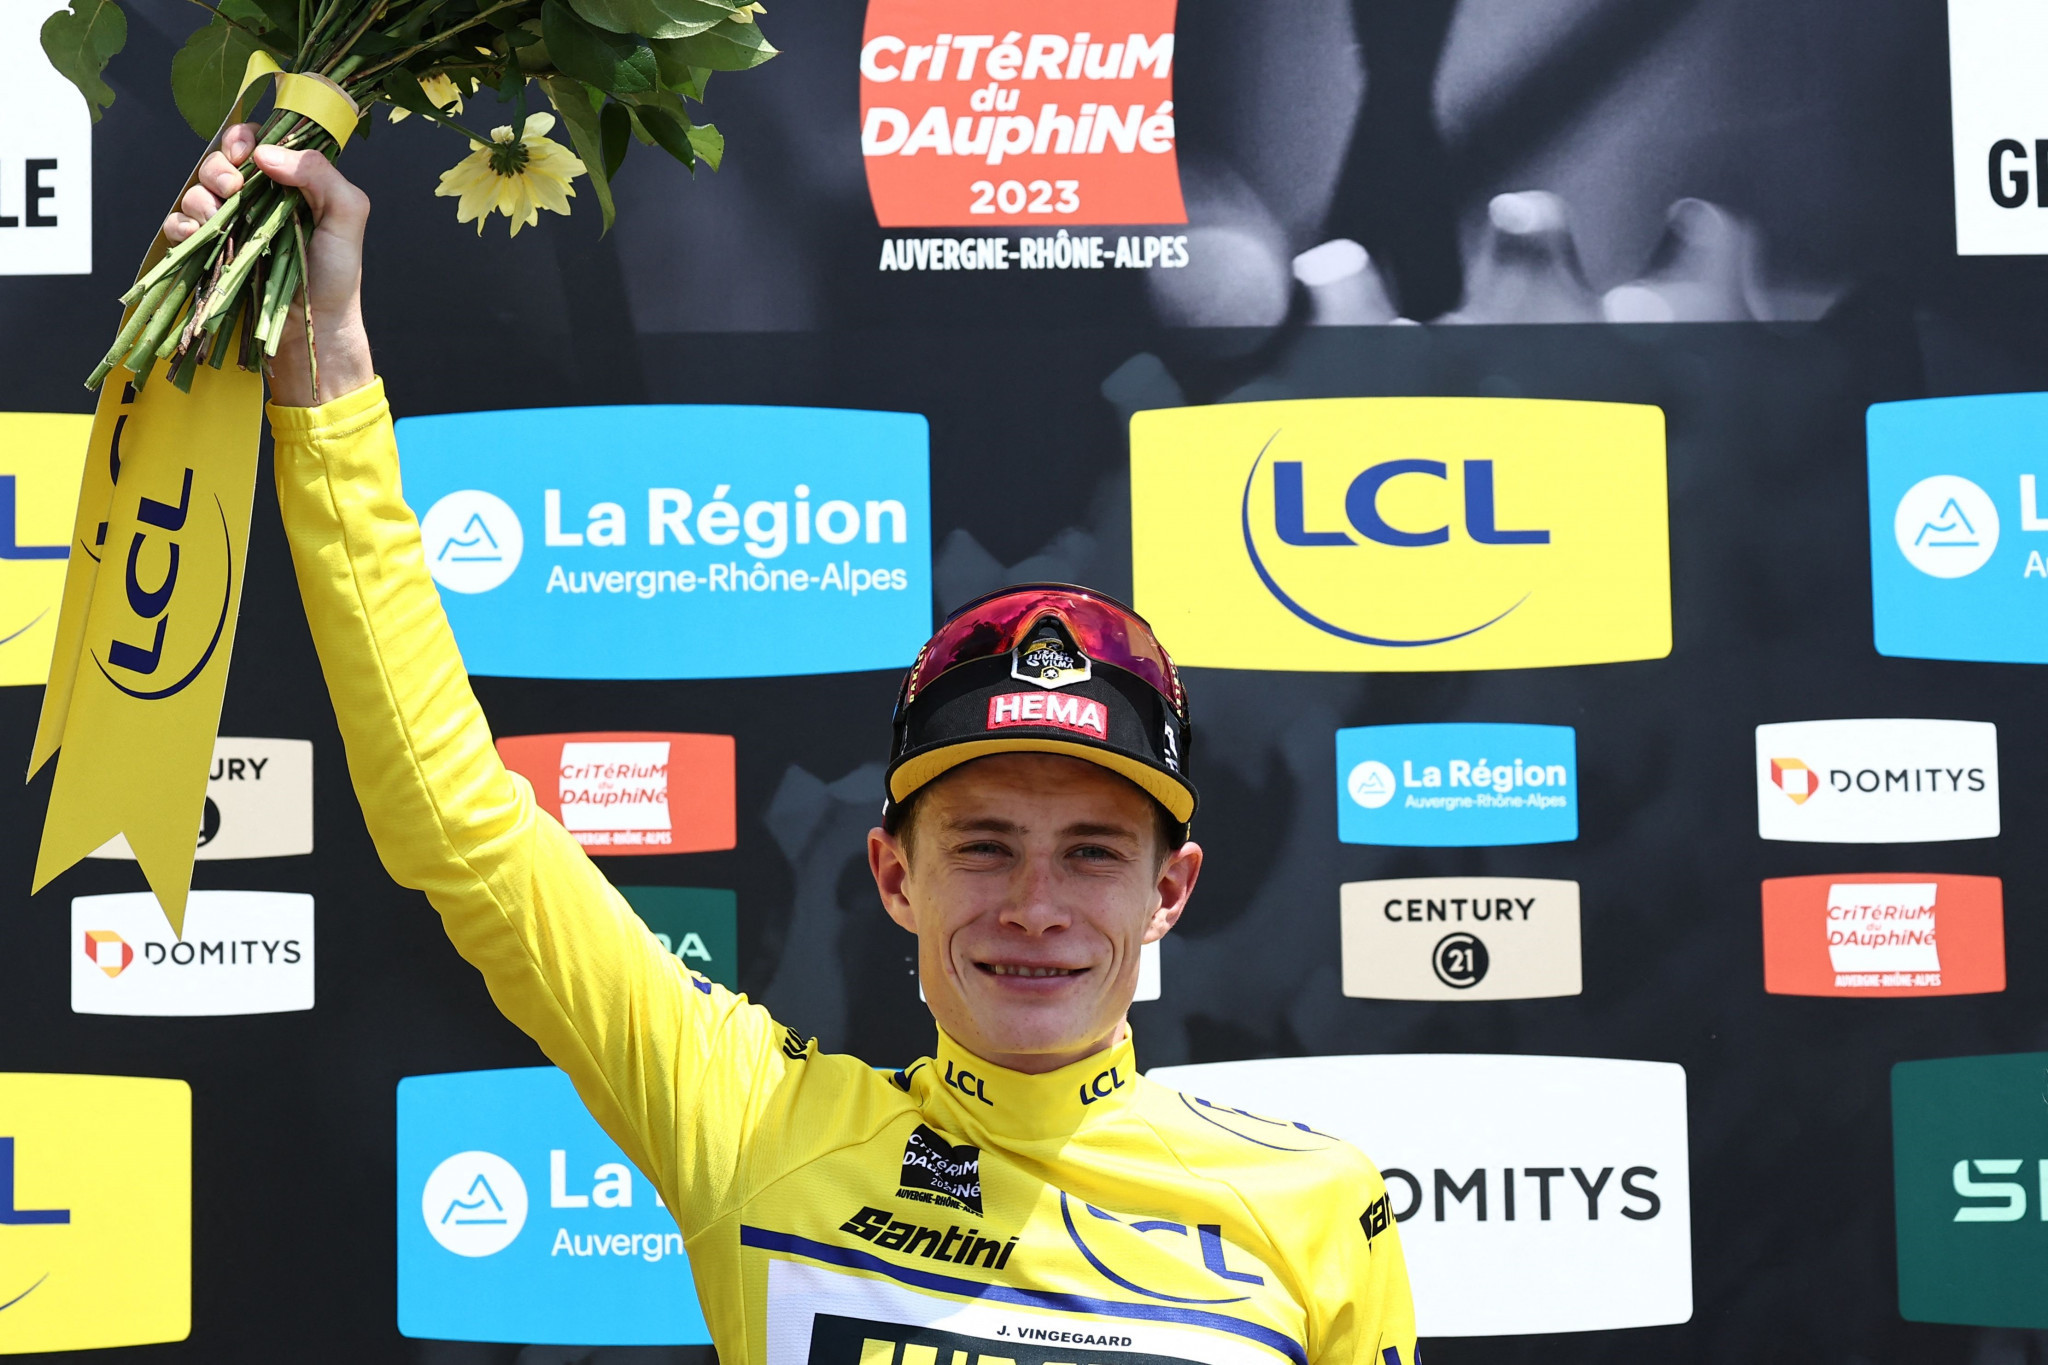 Vingegaard claims Critérium du Dauphiné title in boost to Tour de France hopes